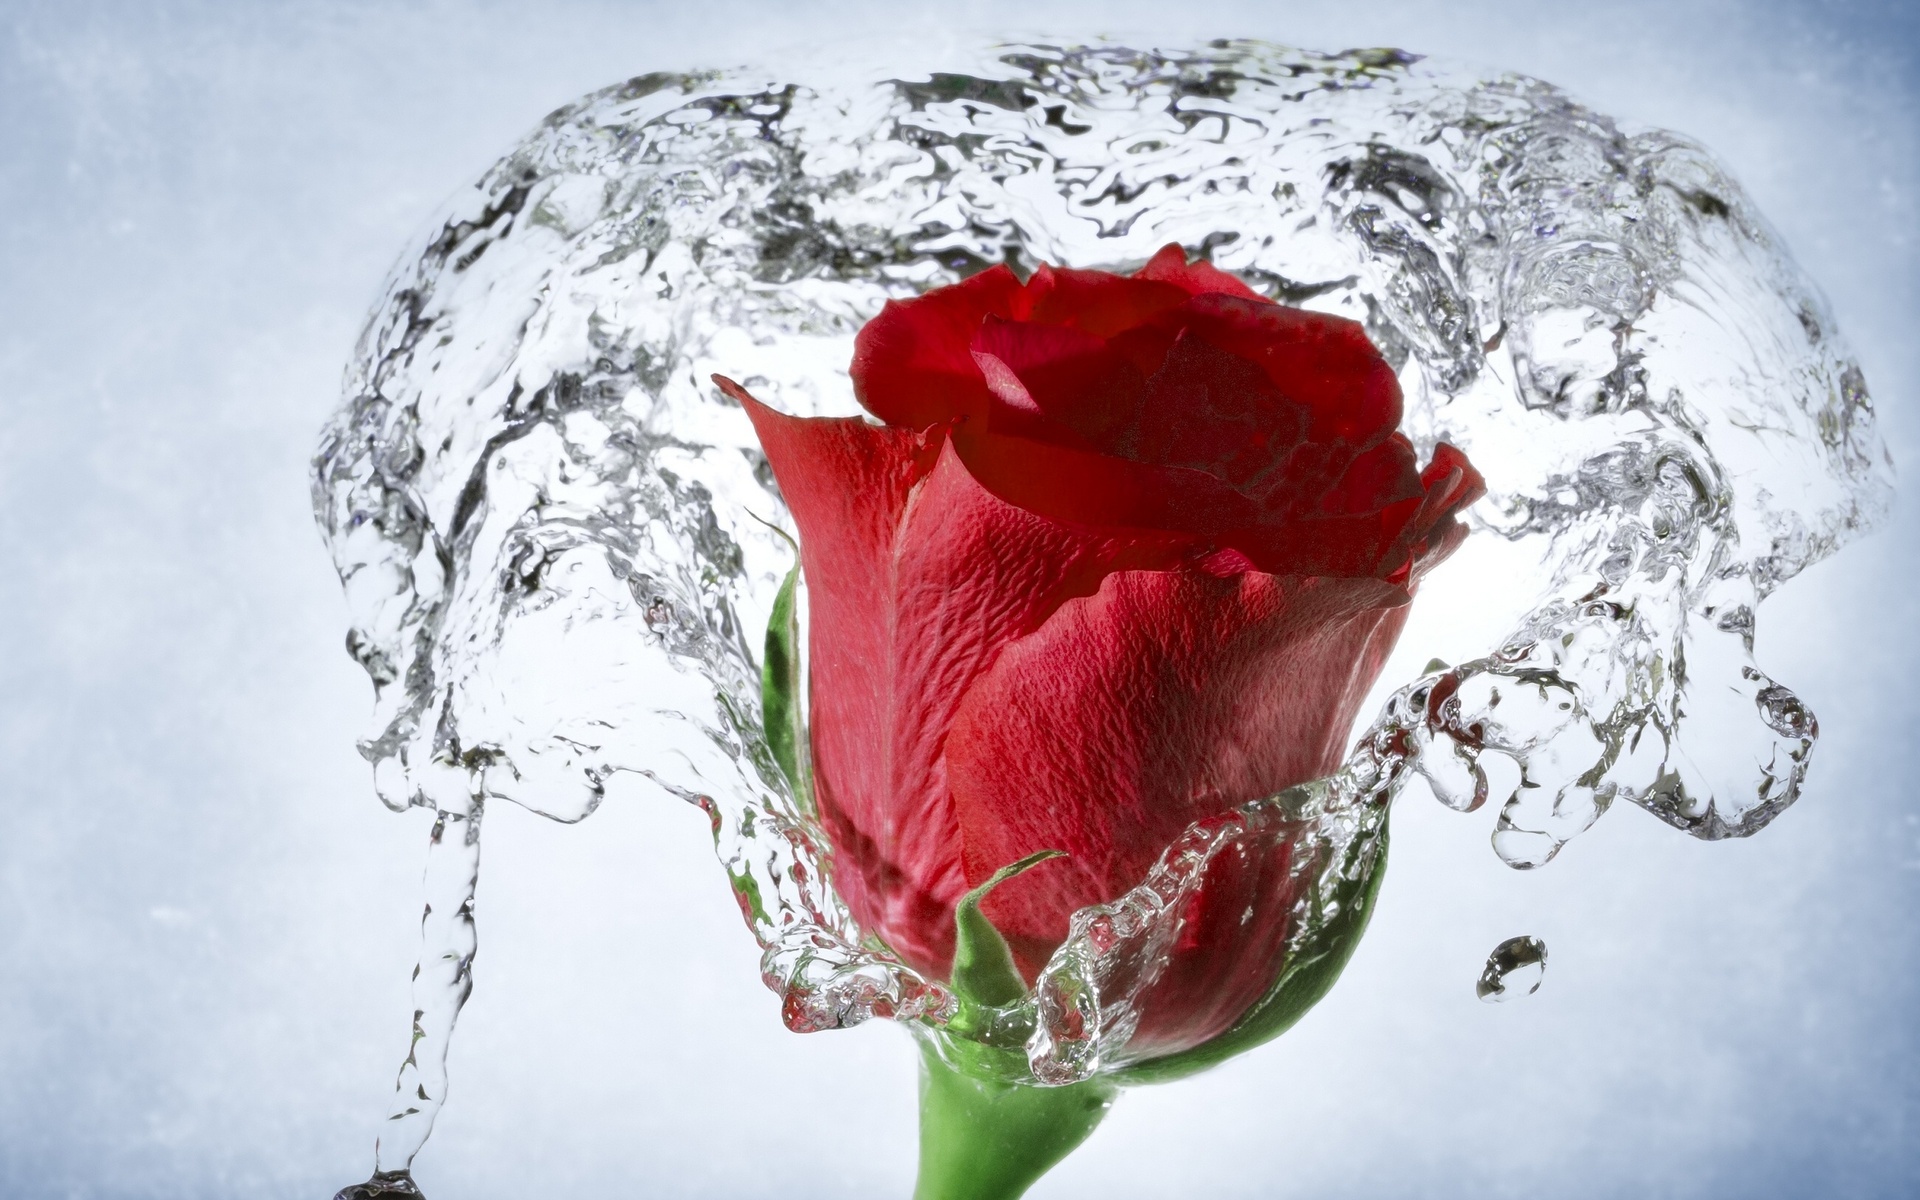 Rose with Water Drops Wallpaper - WallpaperSafari